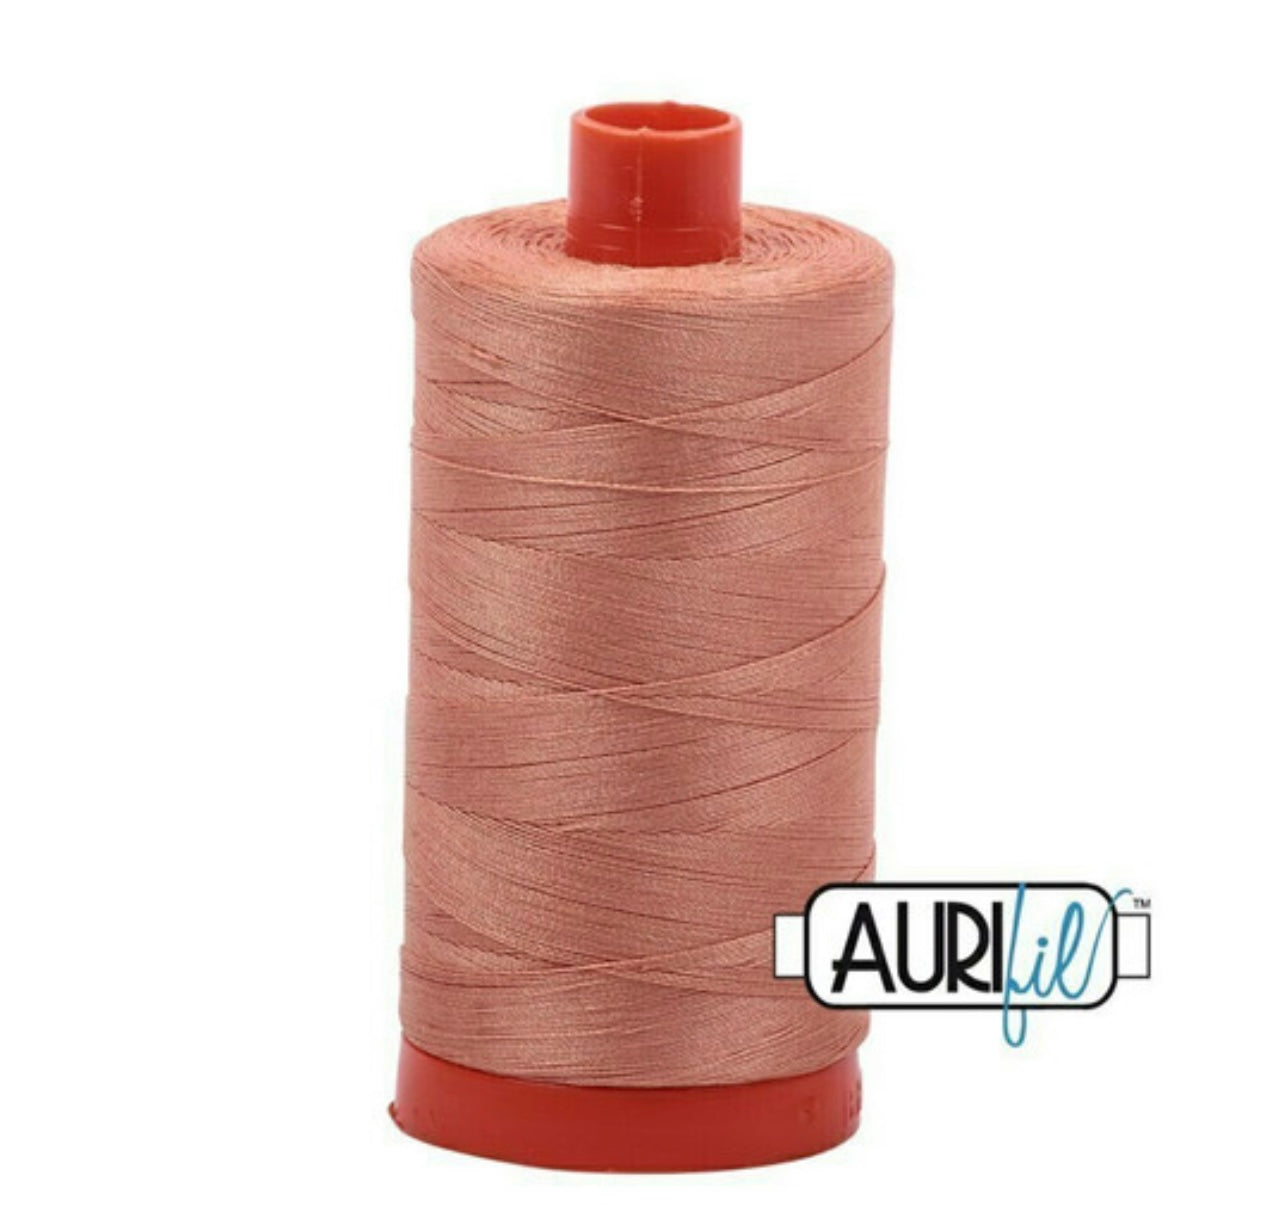 Aurifil Thread Colour 2215 Peach